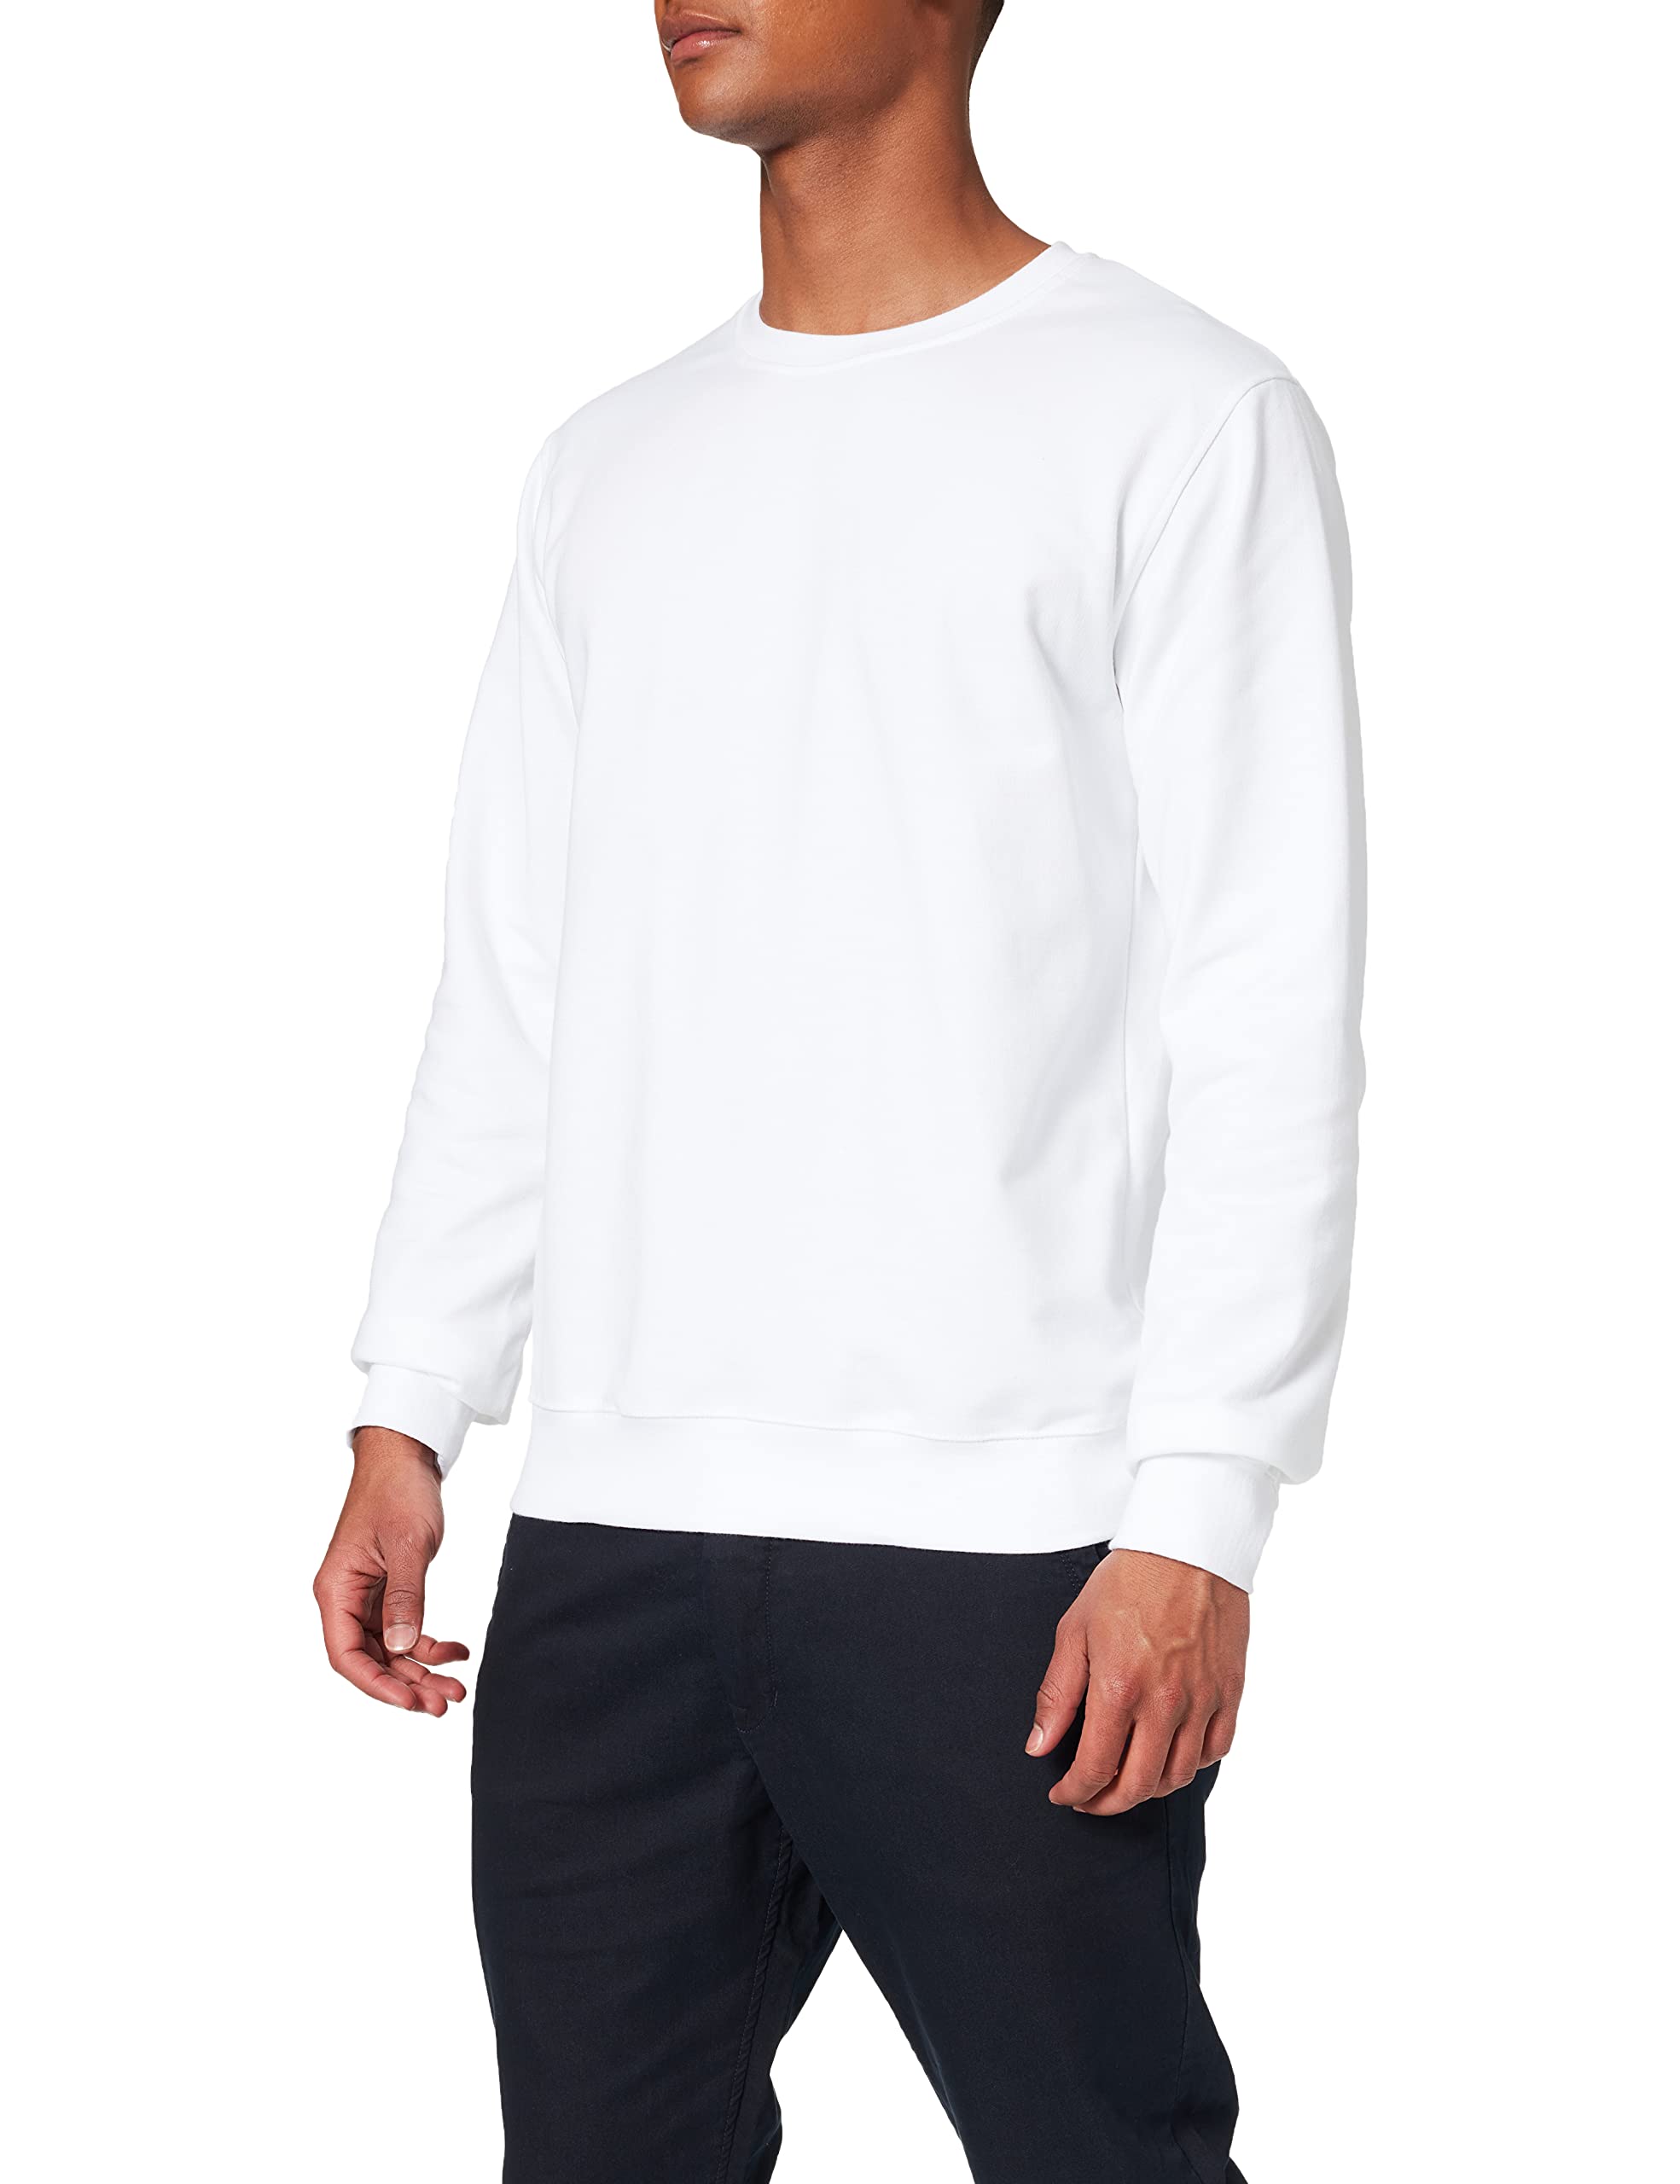 Trigema Damen 574501 Sweatshirt, Weiß (Weiß 001), 56 (Herstellergröße: XXXL)